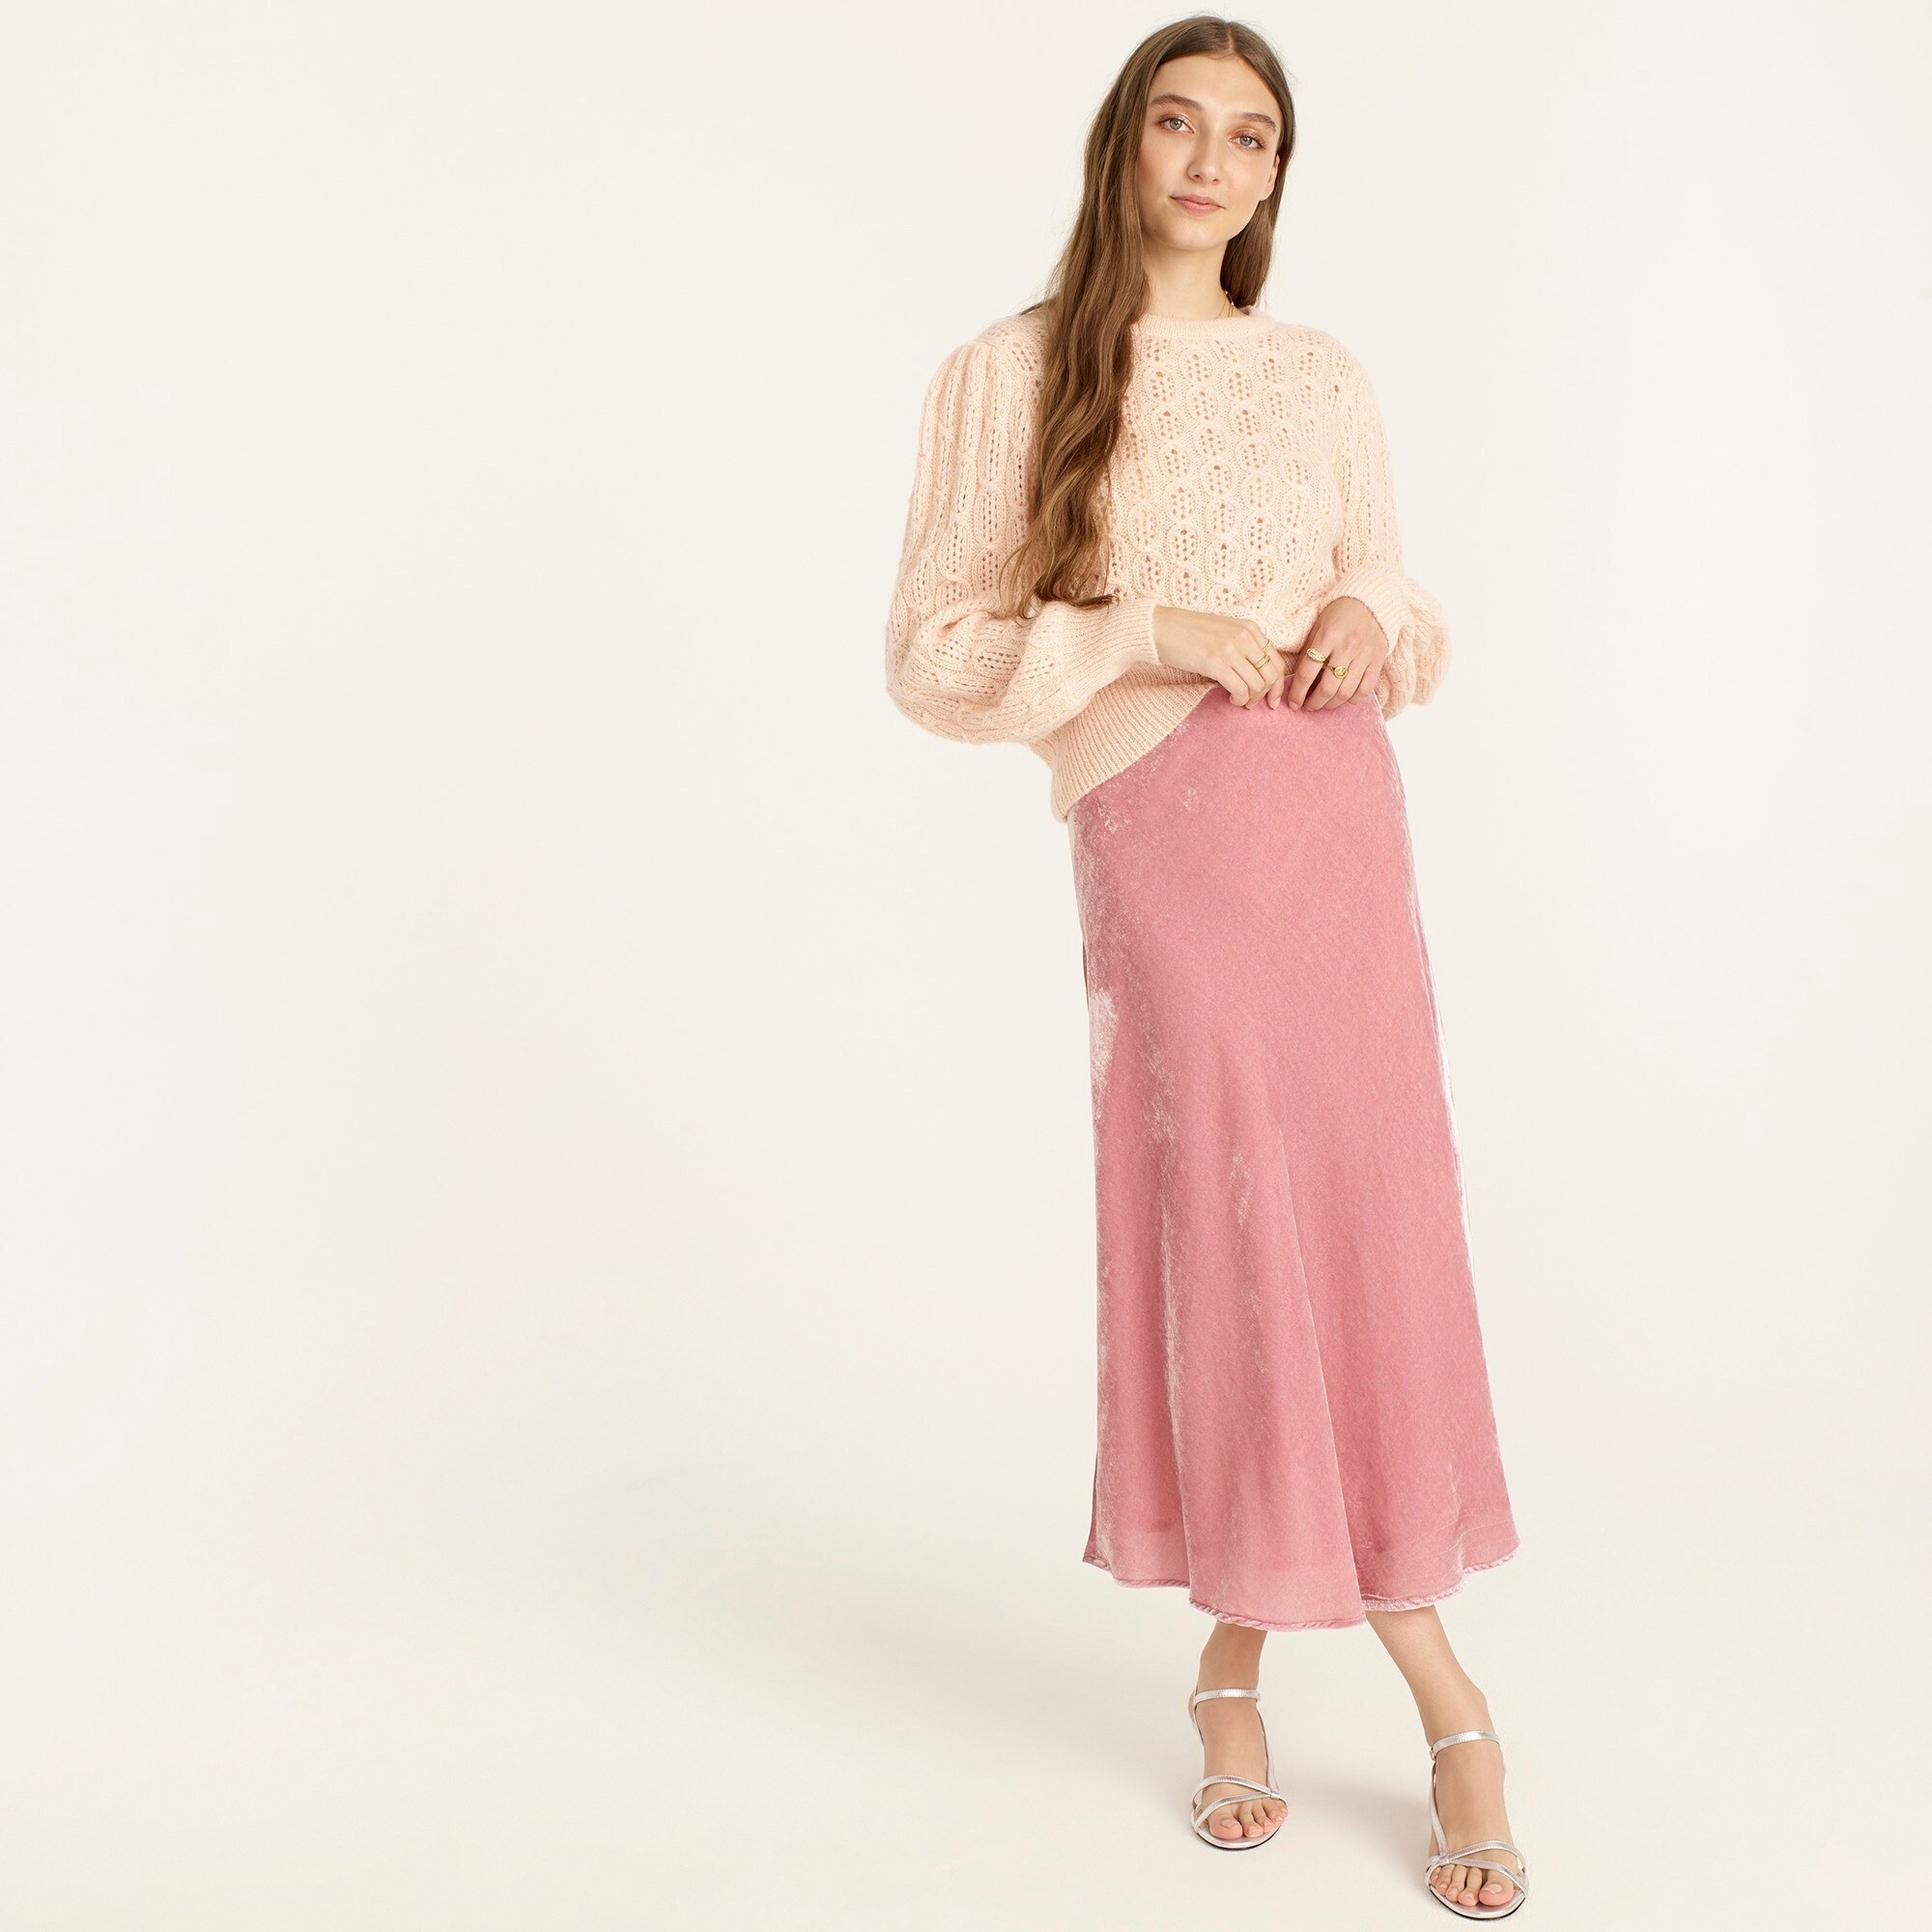 An image of a model wearing a pink pull-on velvet slip skirt